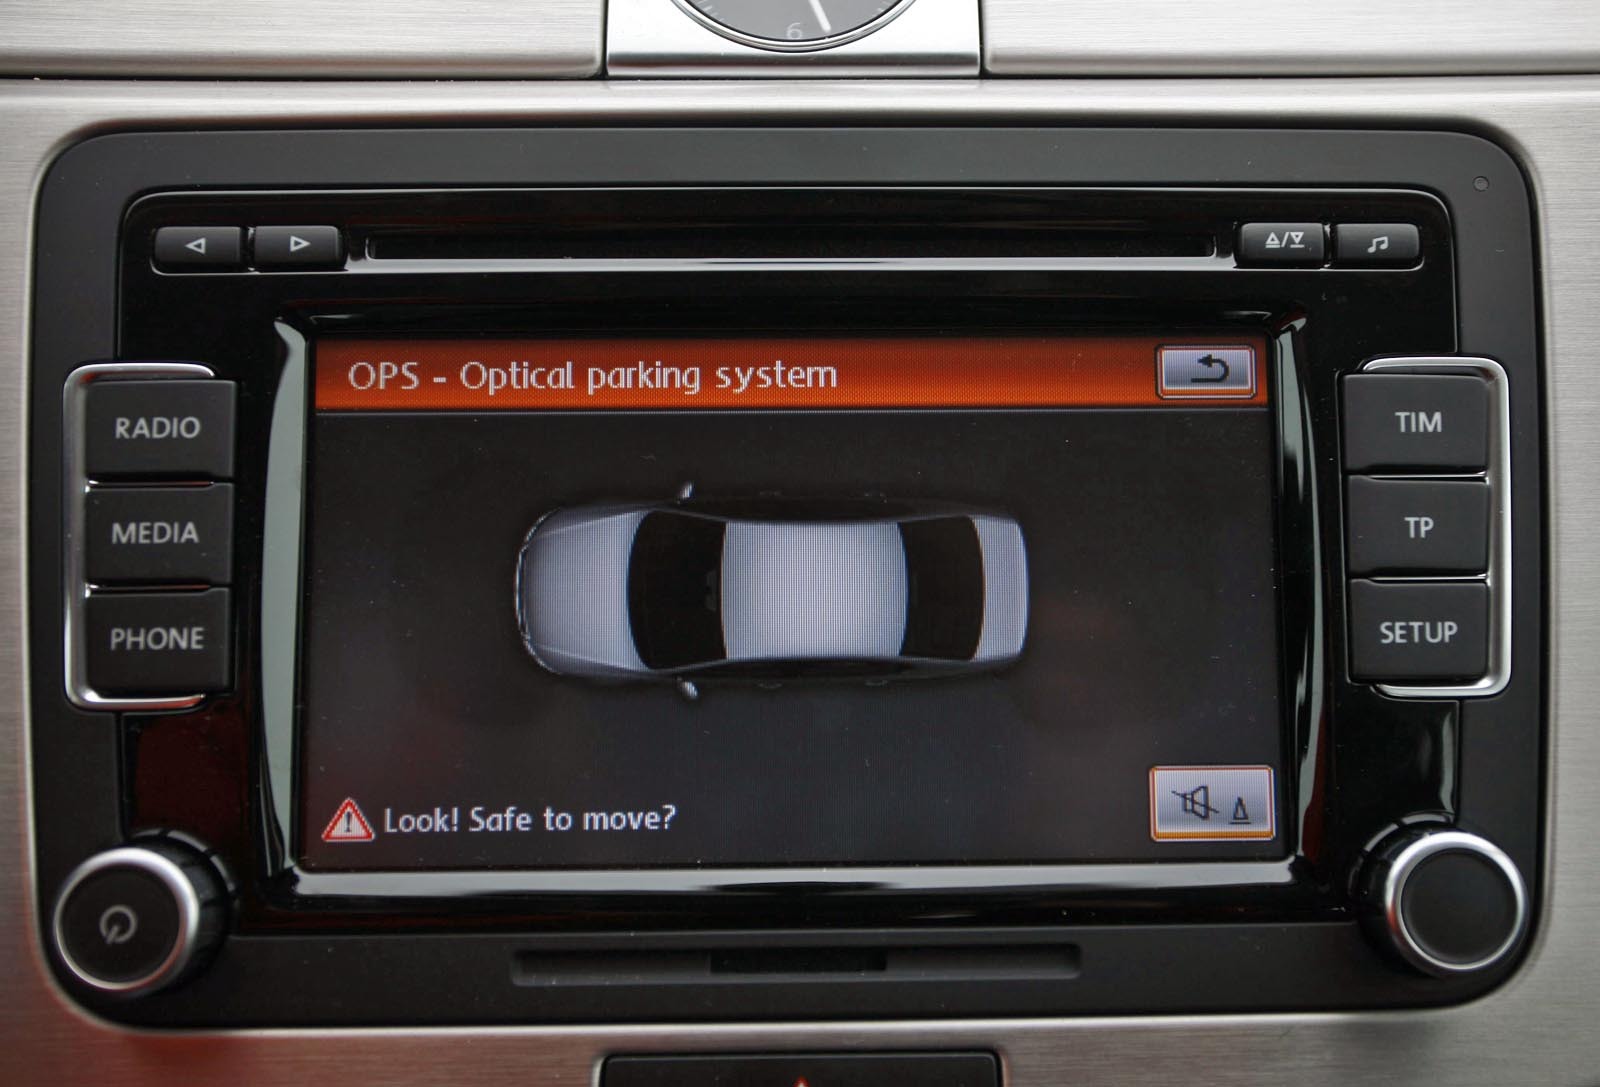 Marile avantaje ale lui VW Passat: ecranul color tactil (optional) si ornamentele din aluminiu